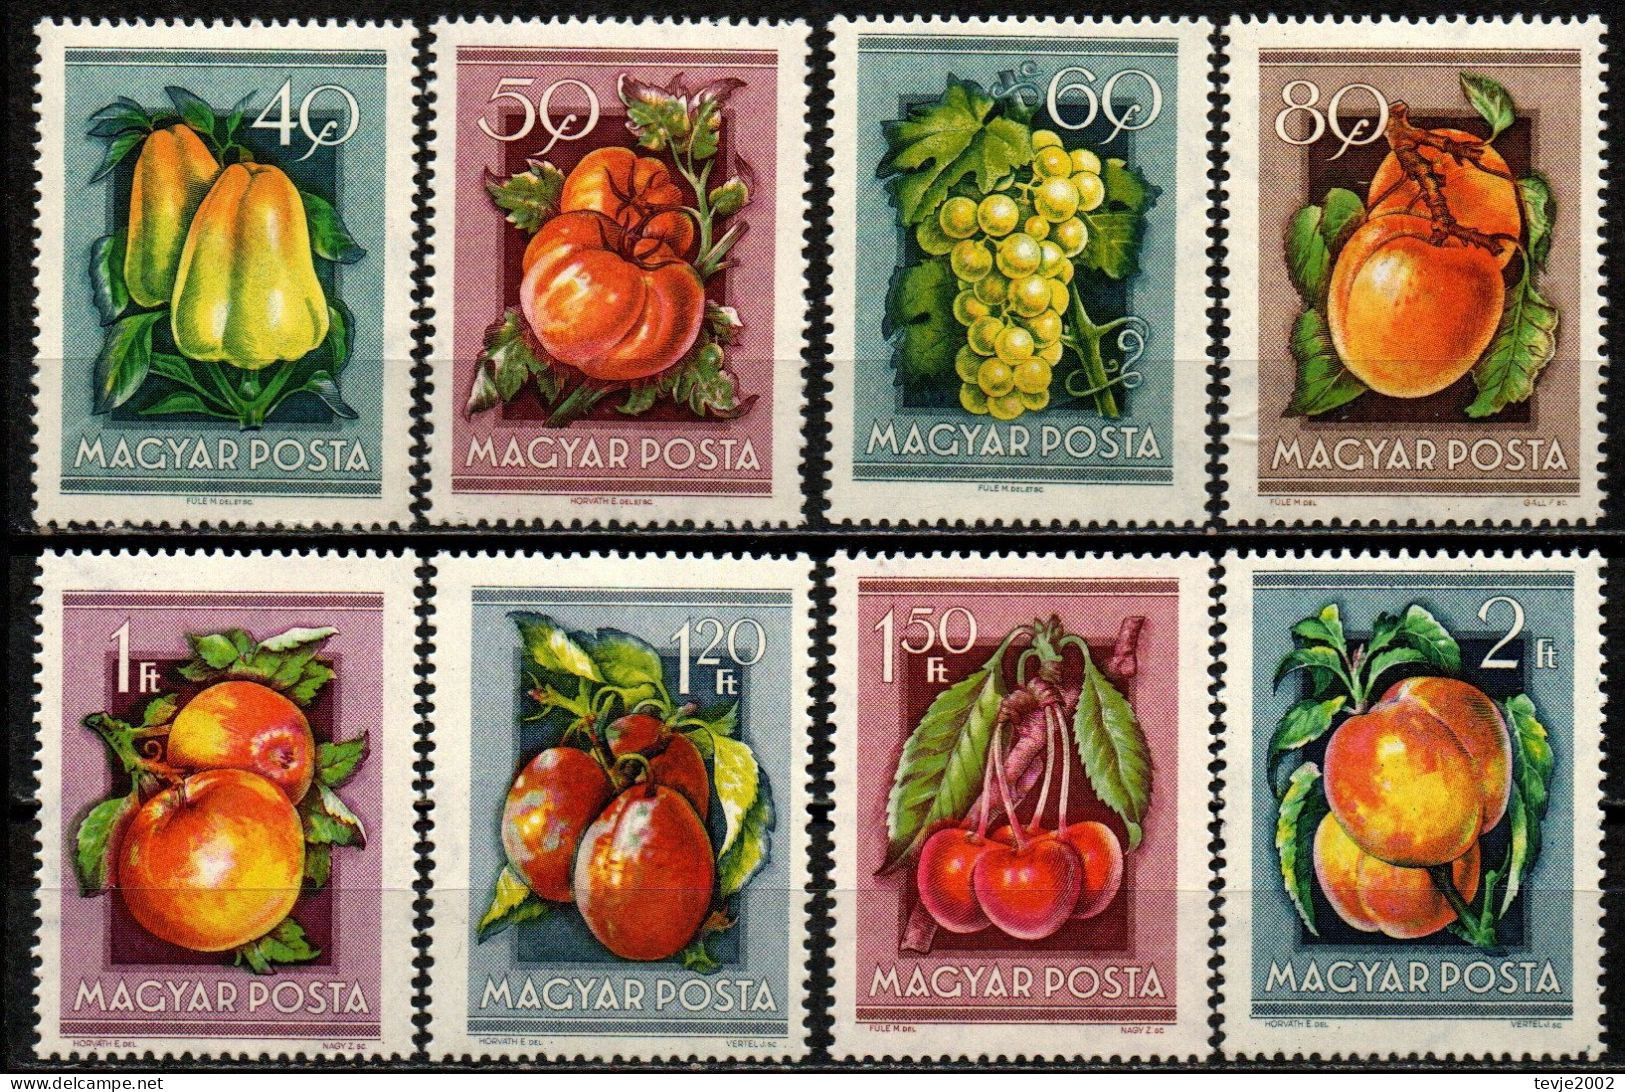 Ungarn 1954 - Mi.Nr. 1387 - 1394 - Postfrisch MNH - Früchte Obst Fruits - Obst & Früchte